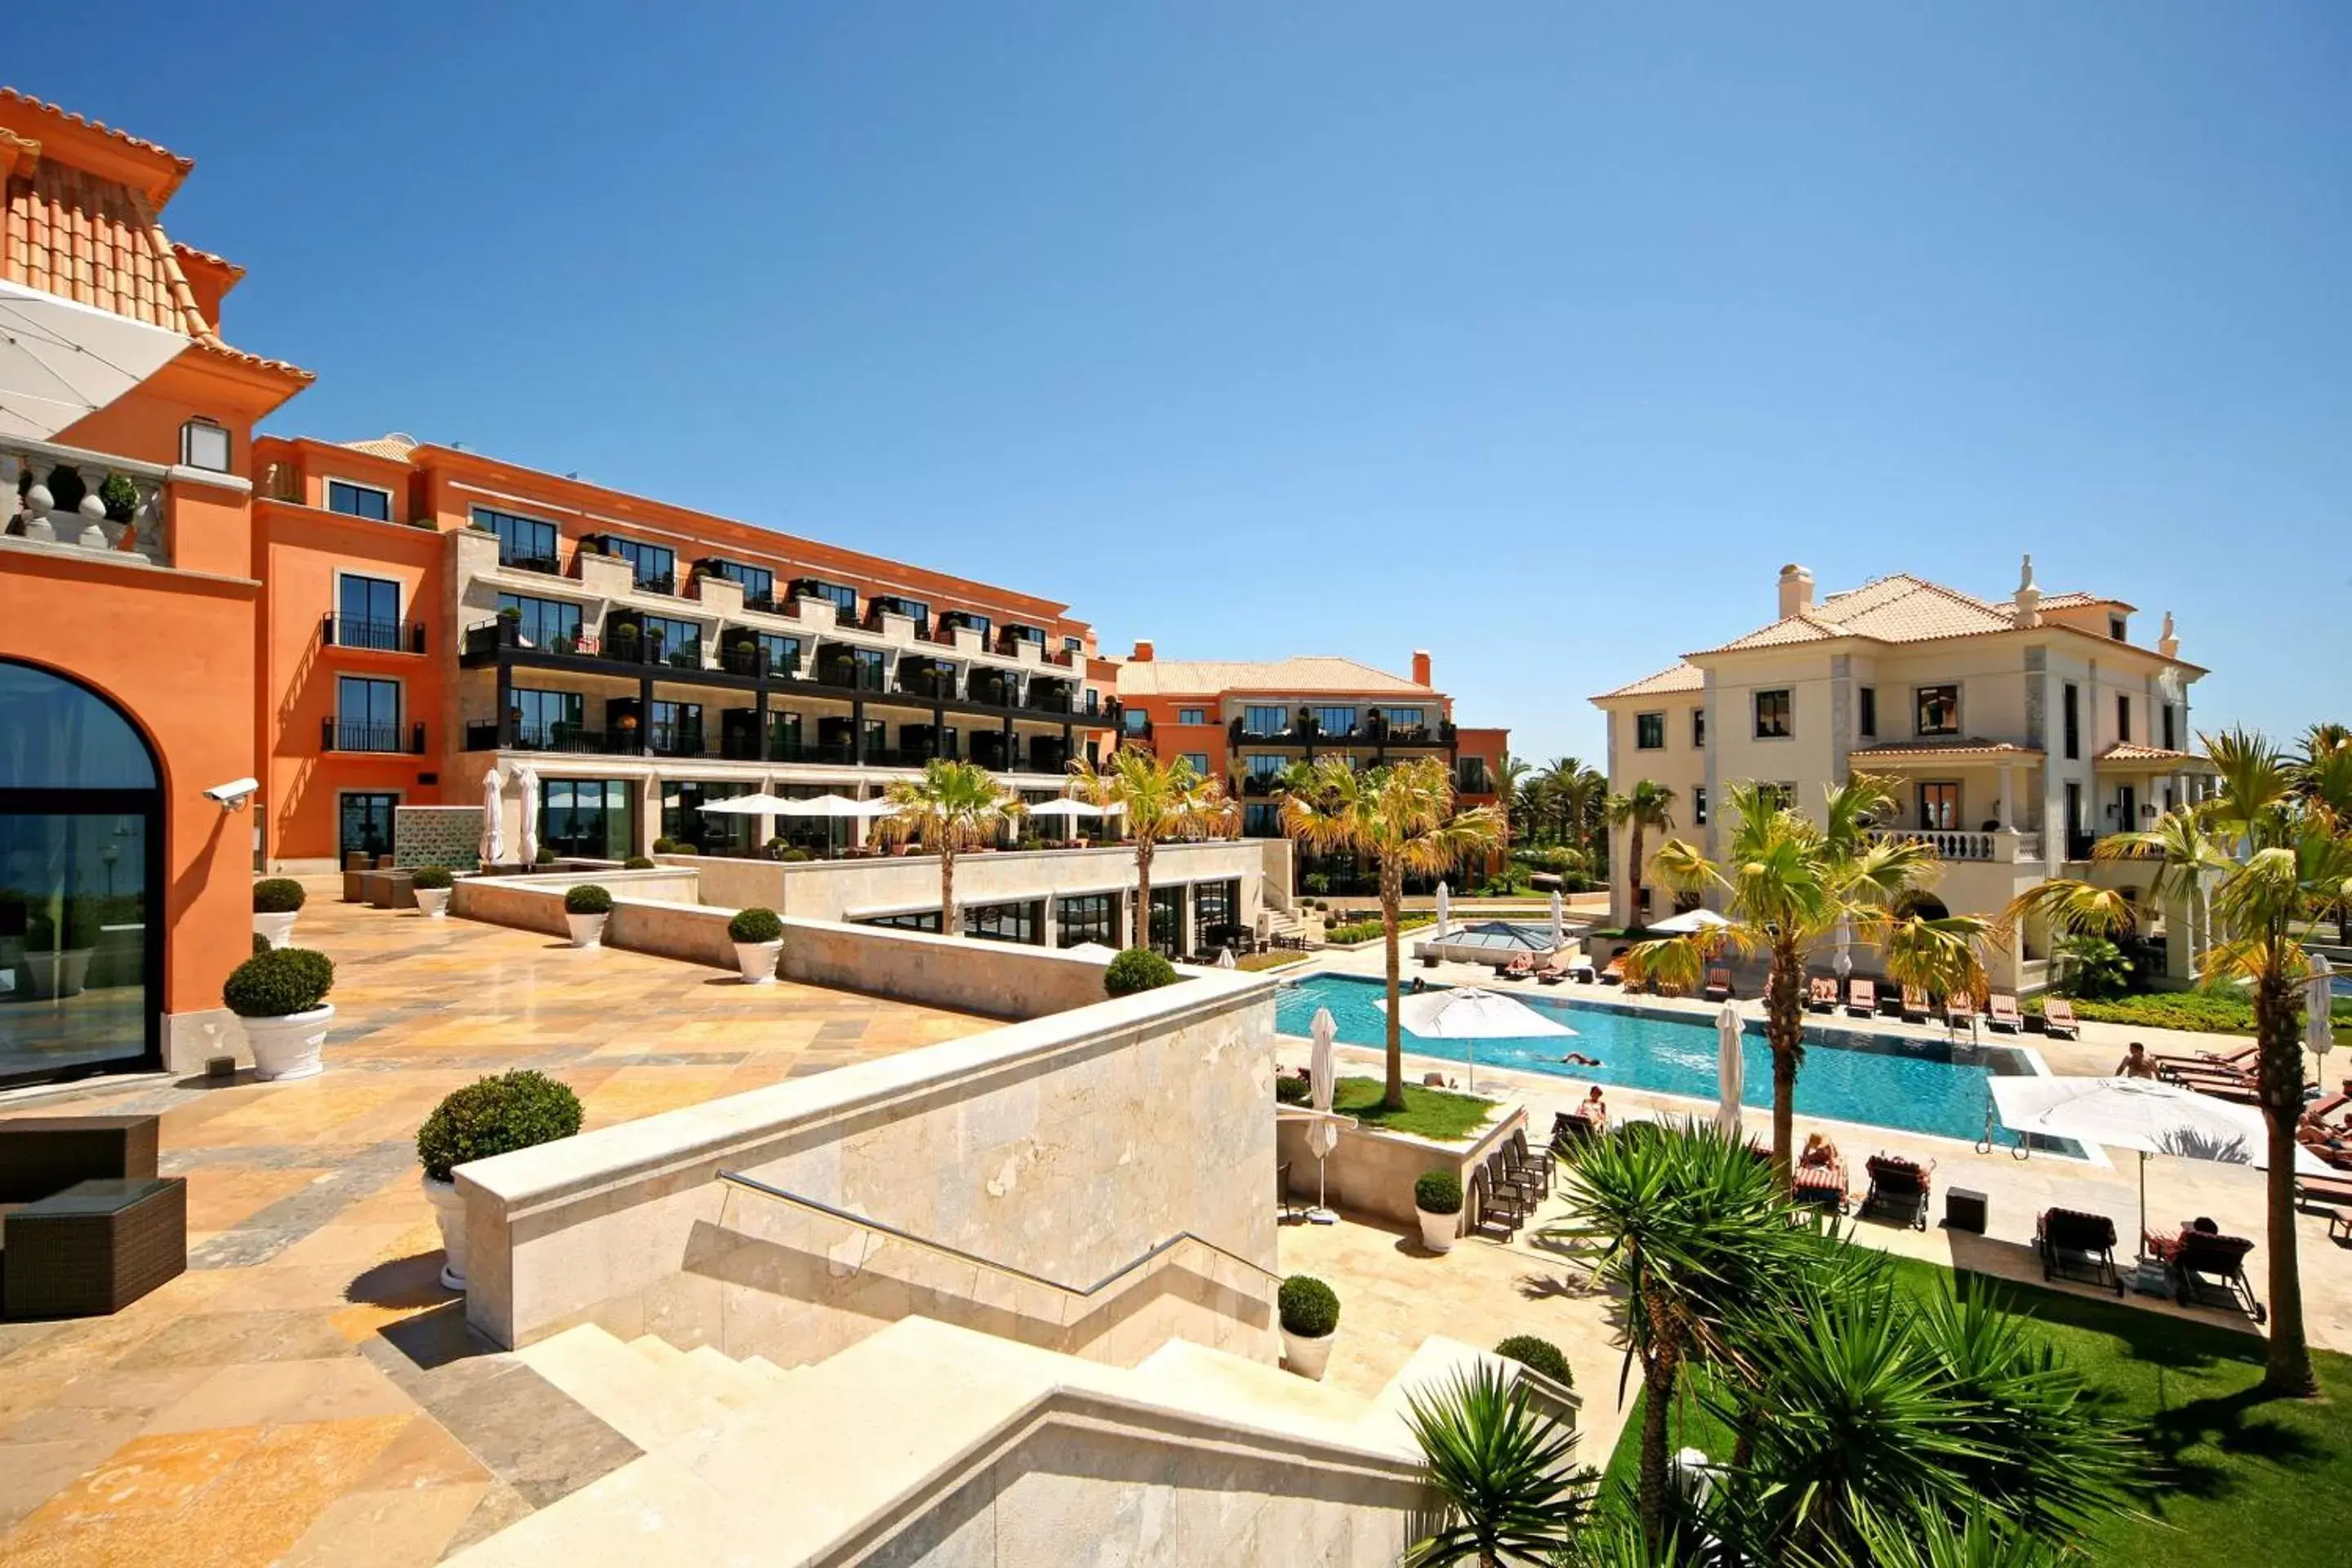 Garden, Pool View in Grande Real Villa Itália Hotel & Spa